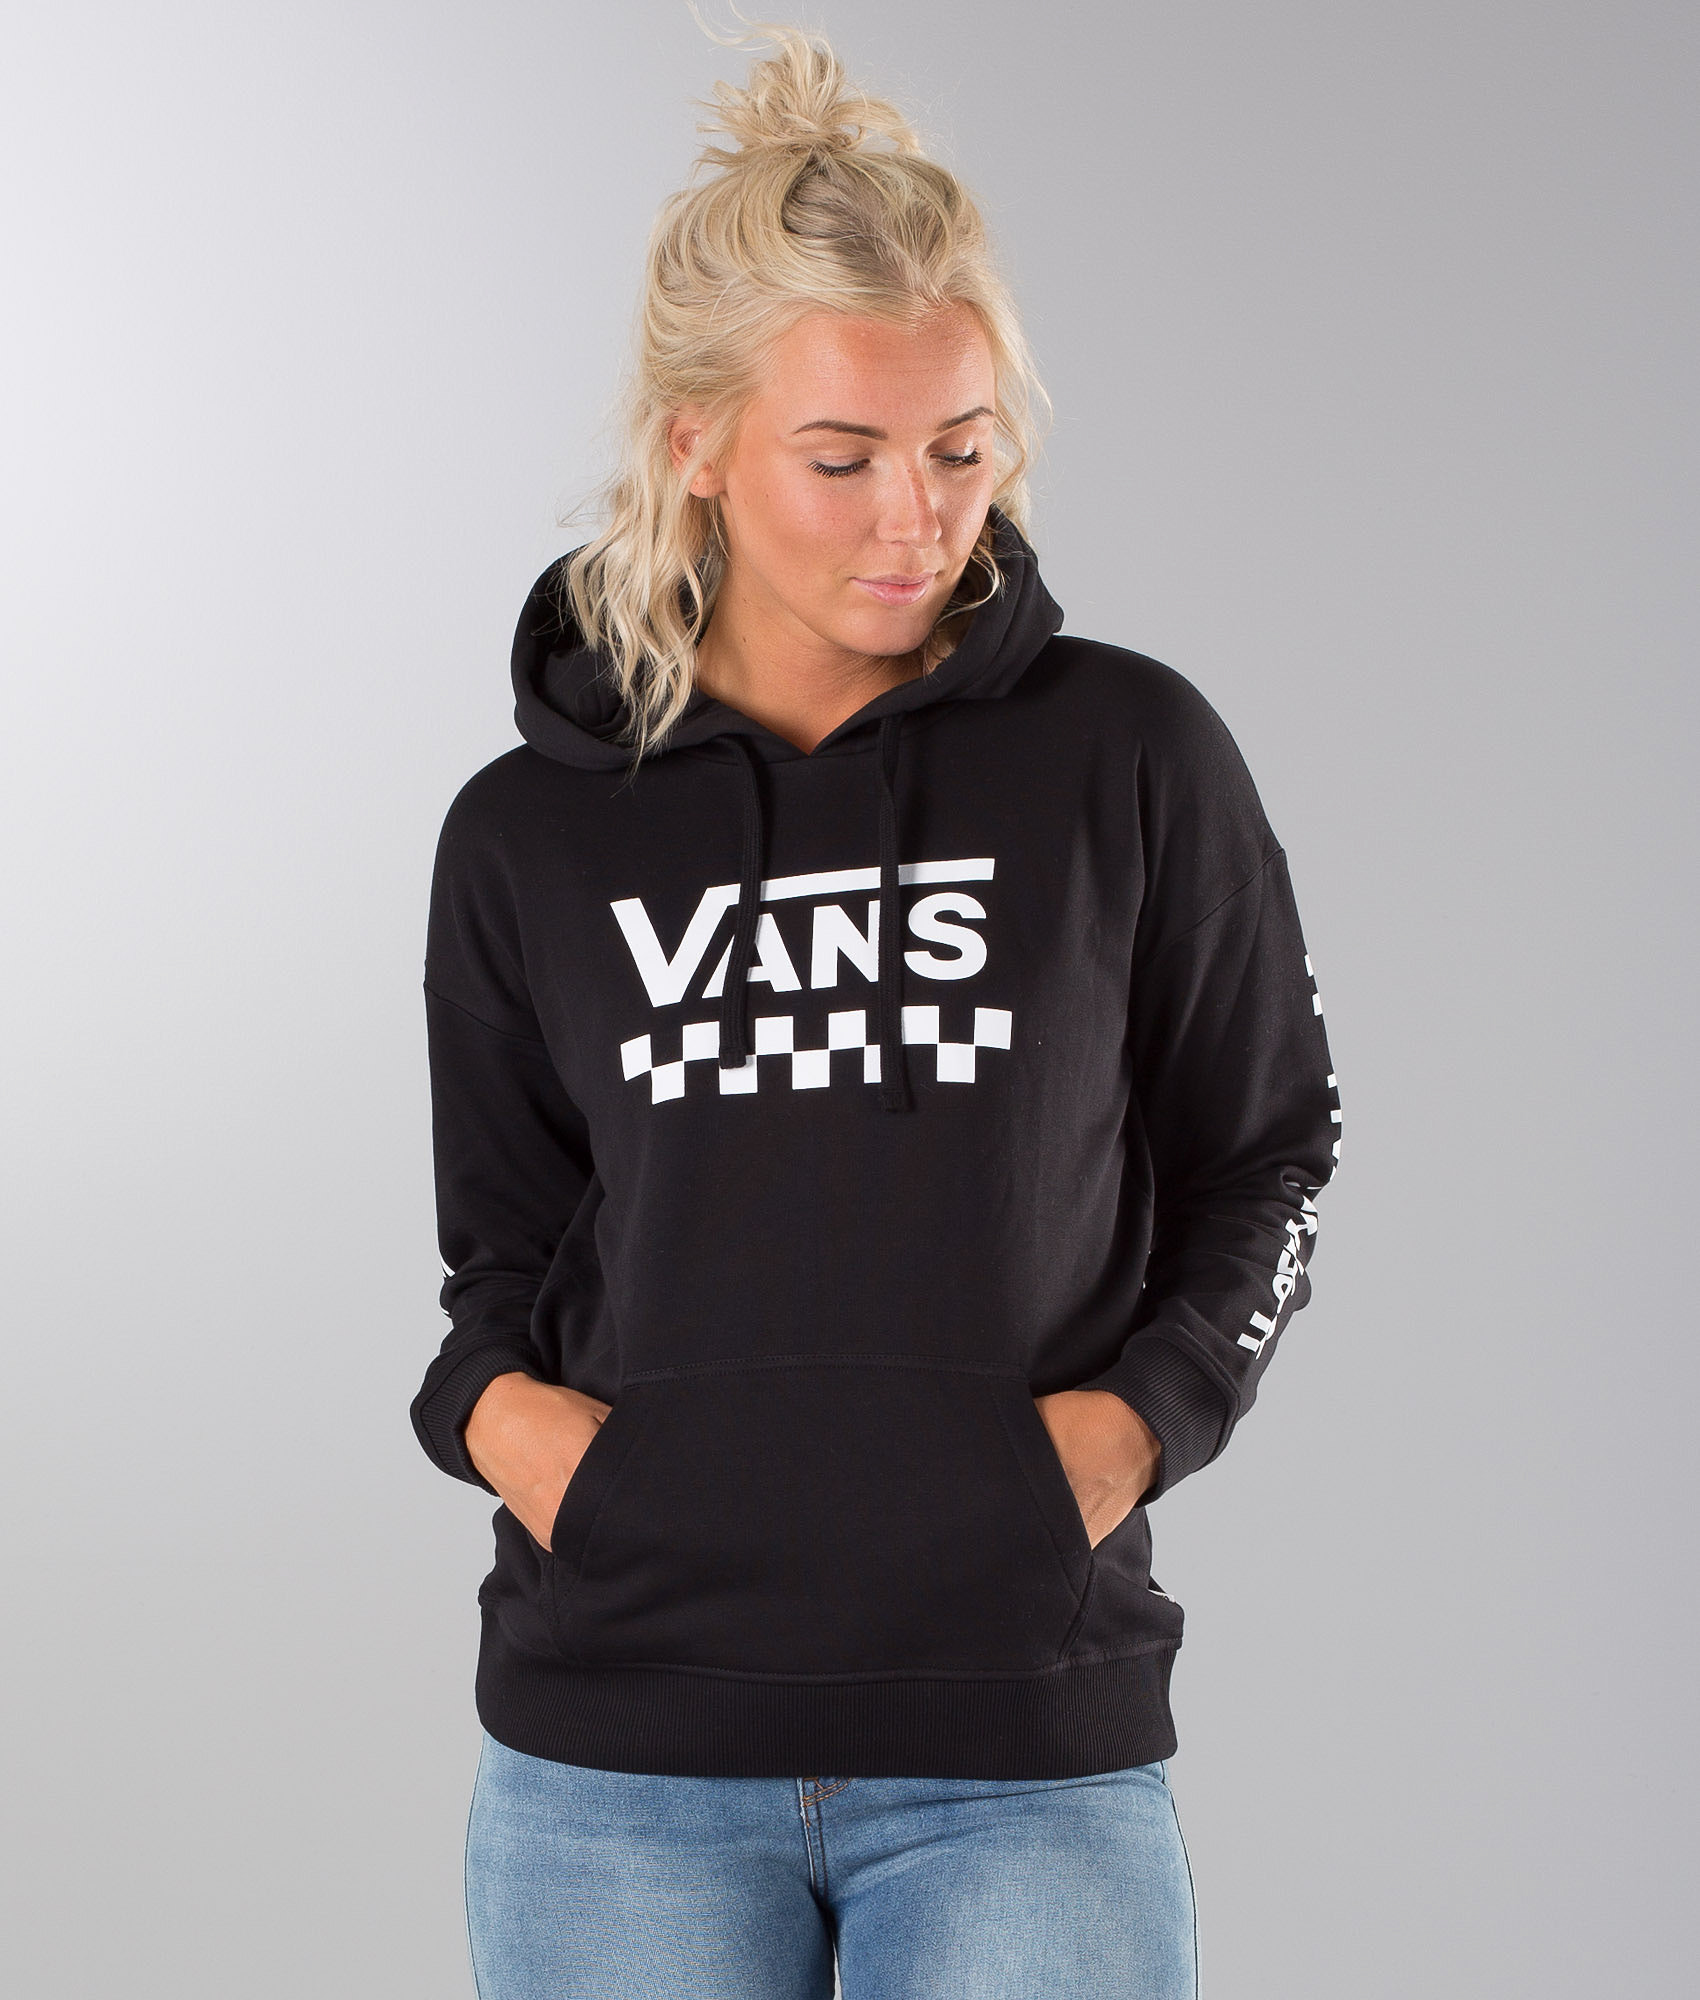 vans too much fun hoodie